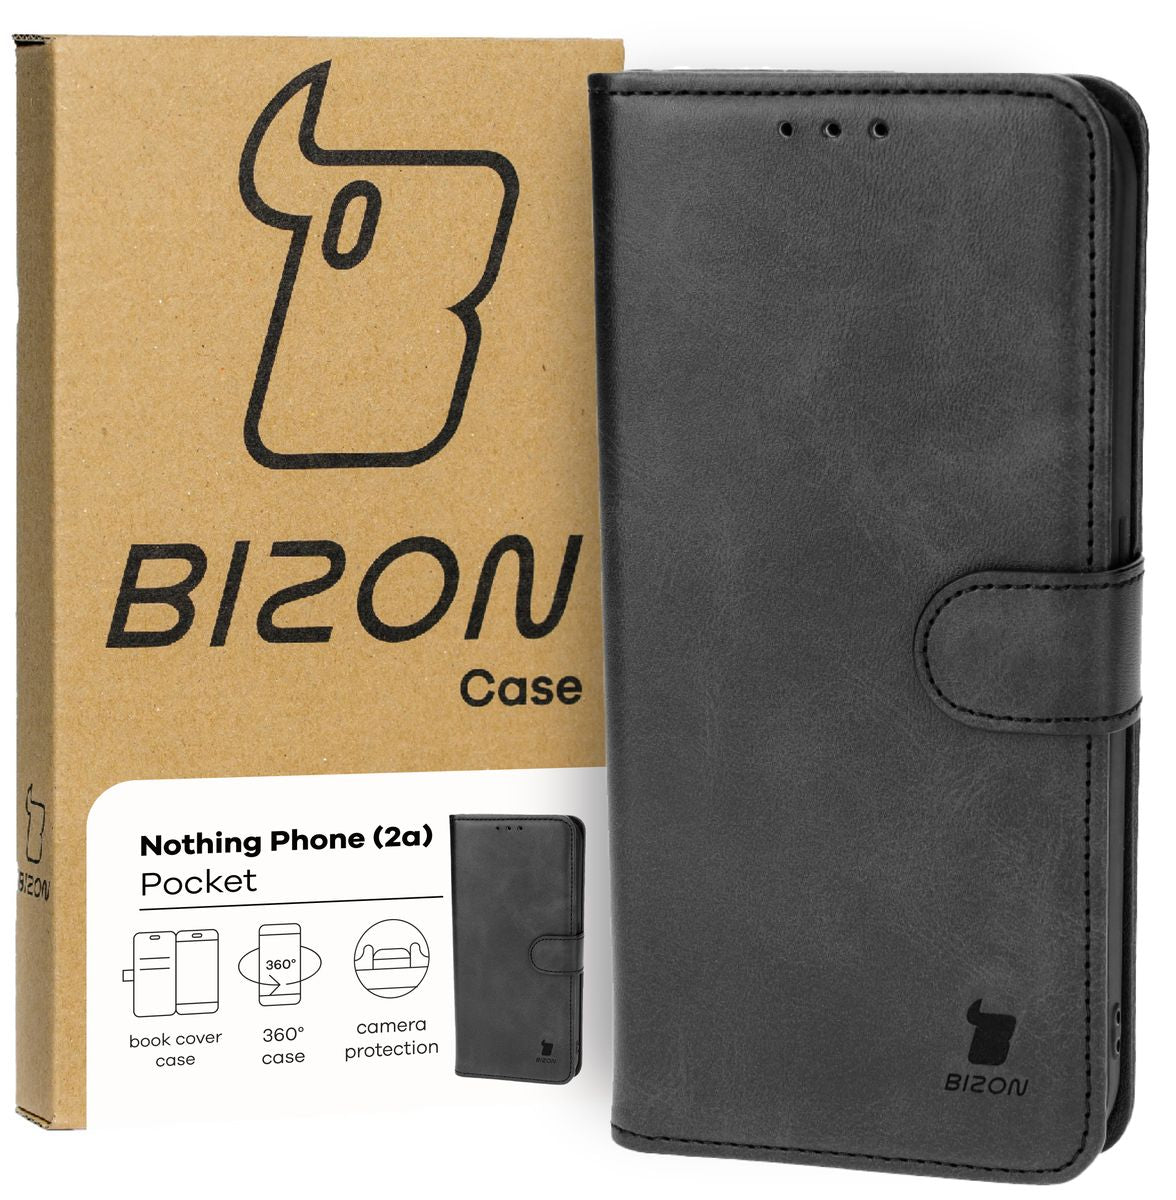 Schutzhülle für Nothing Phone (2a), Bizon Case Pocket, Schwarz